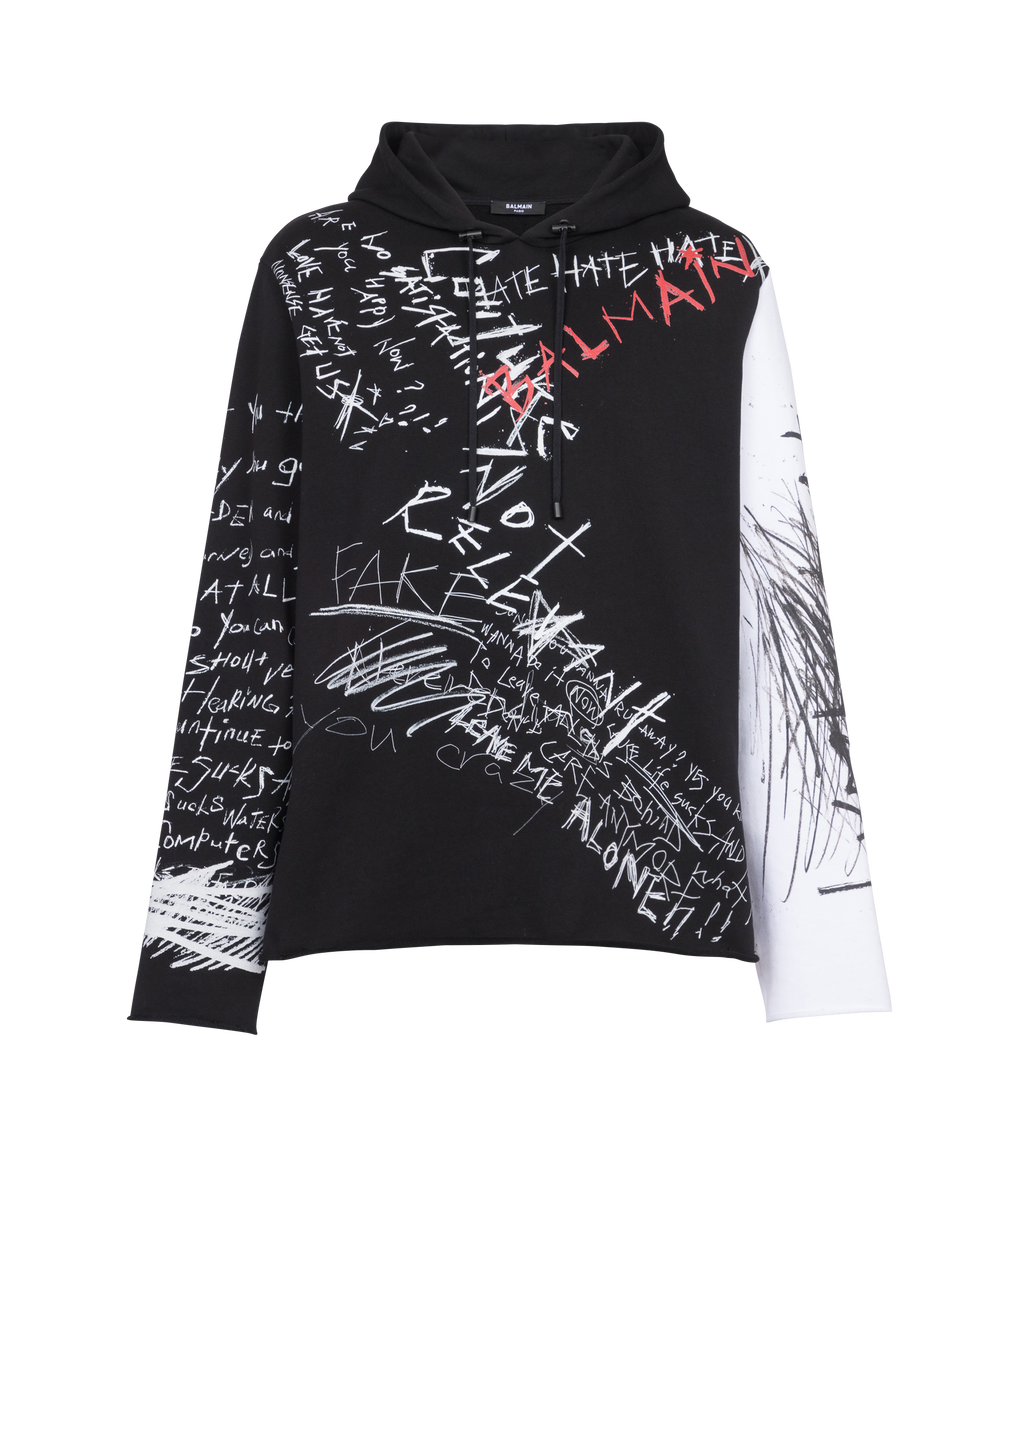 Sweat à capuche en coton imprimé logo graffiti Balmain, noir, hi-res